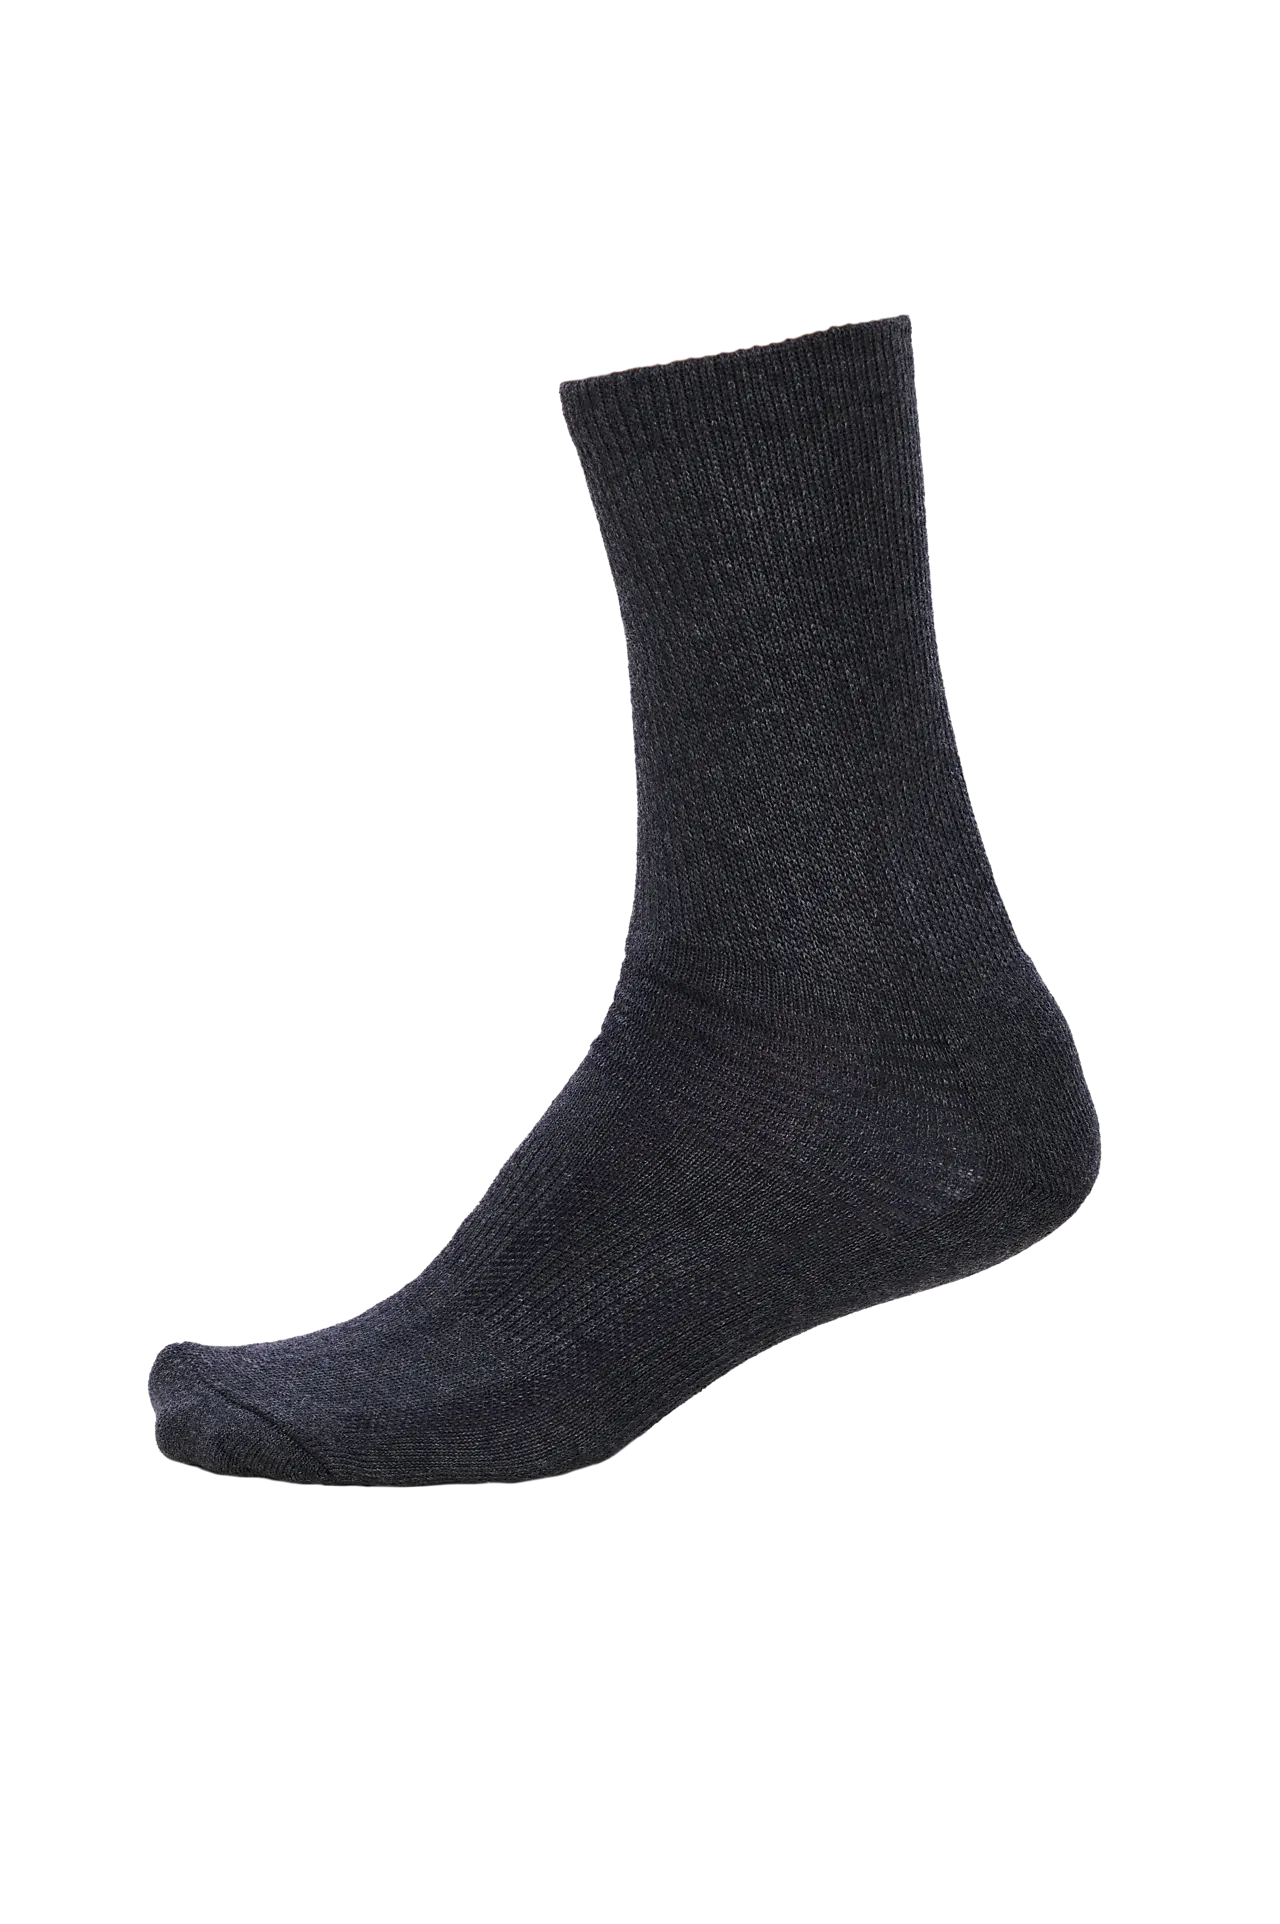 Timbra sokk bomull 2pk grå 44-46 null - null - 3 - Miniatyr